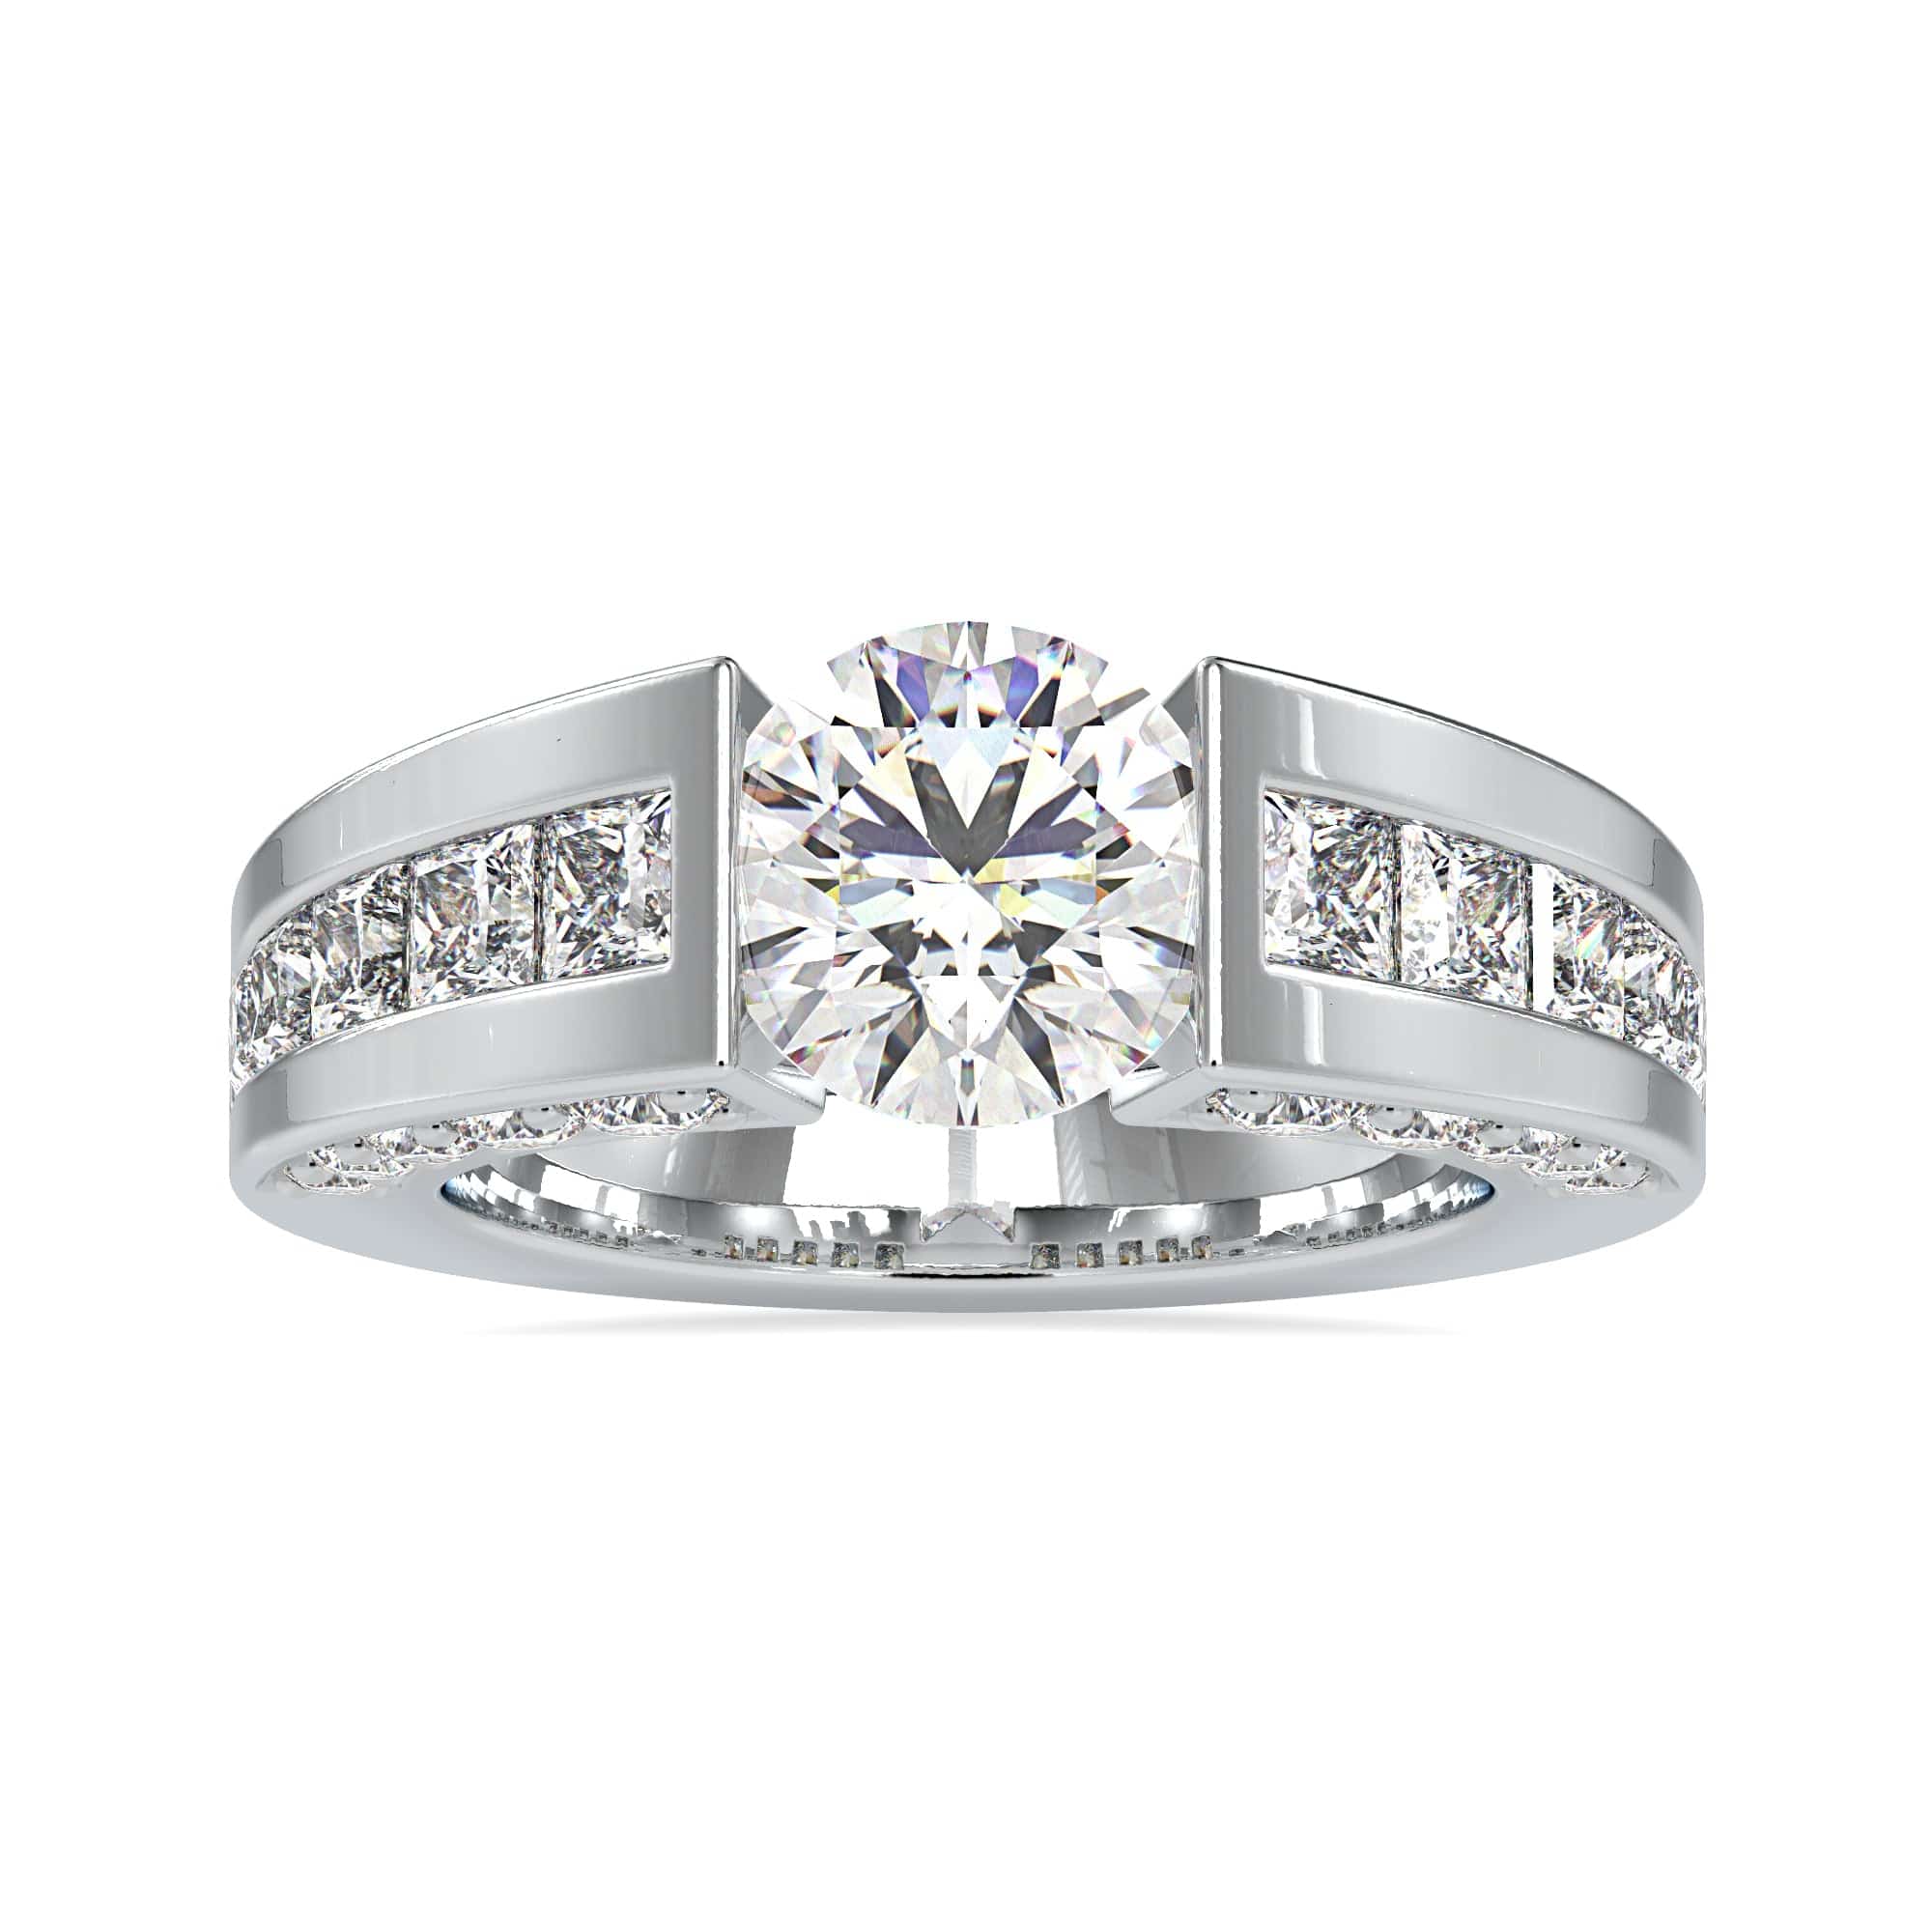 1 Carat Diamond Ring Price | Buying Guide